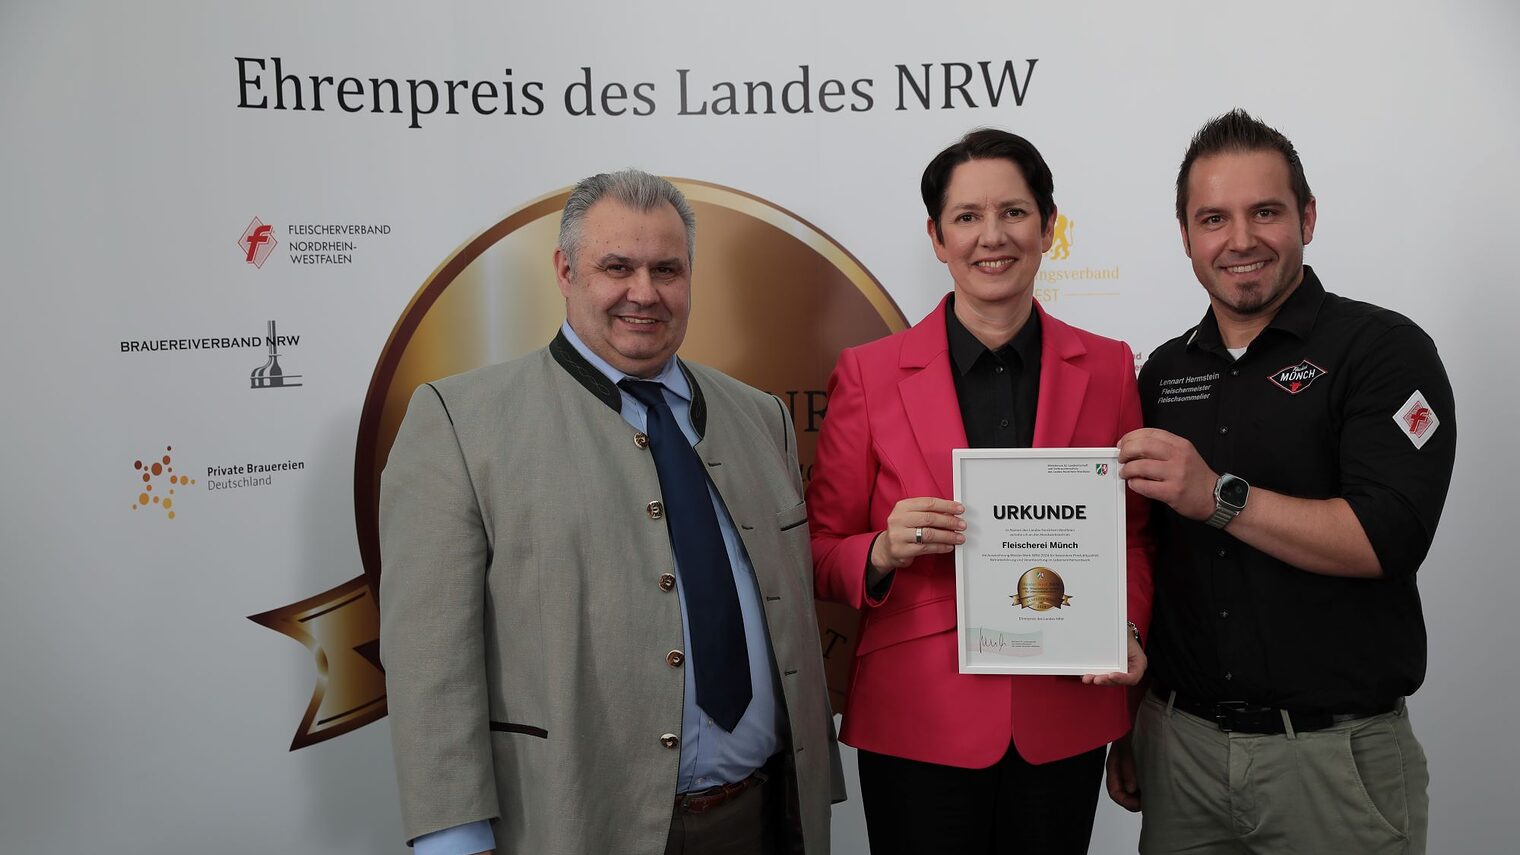 15 Handwerksbetriebe aus OWL wurden mit dem Ehrenpreis des Landes NRW ausgezeichnet. Auf diesem Bild zu sehen: (v. l.) Landesinnungsmeister Adalbert Wolf, NRW-Ministerin Silke Gorißen sowie Lennart Hermstein (Fleischerei Münch) 